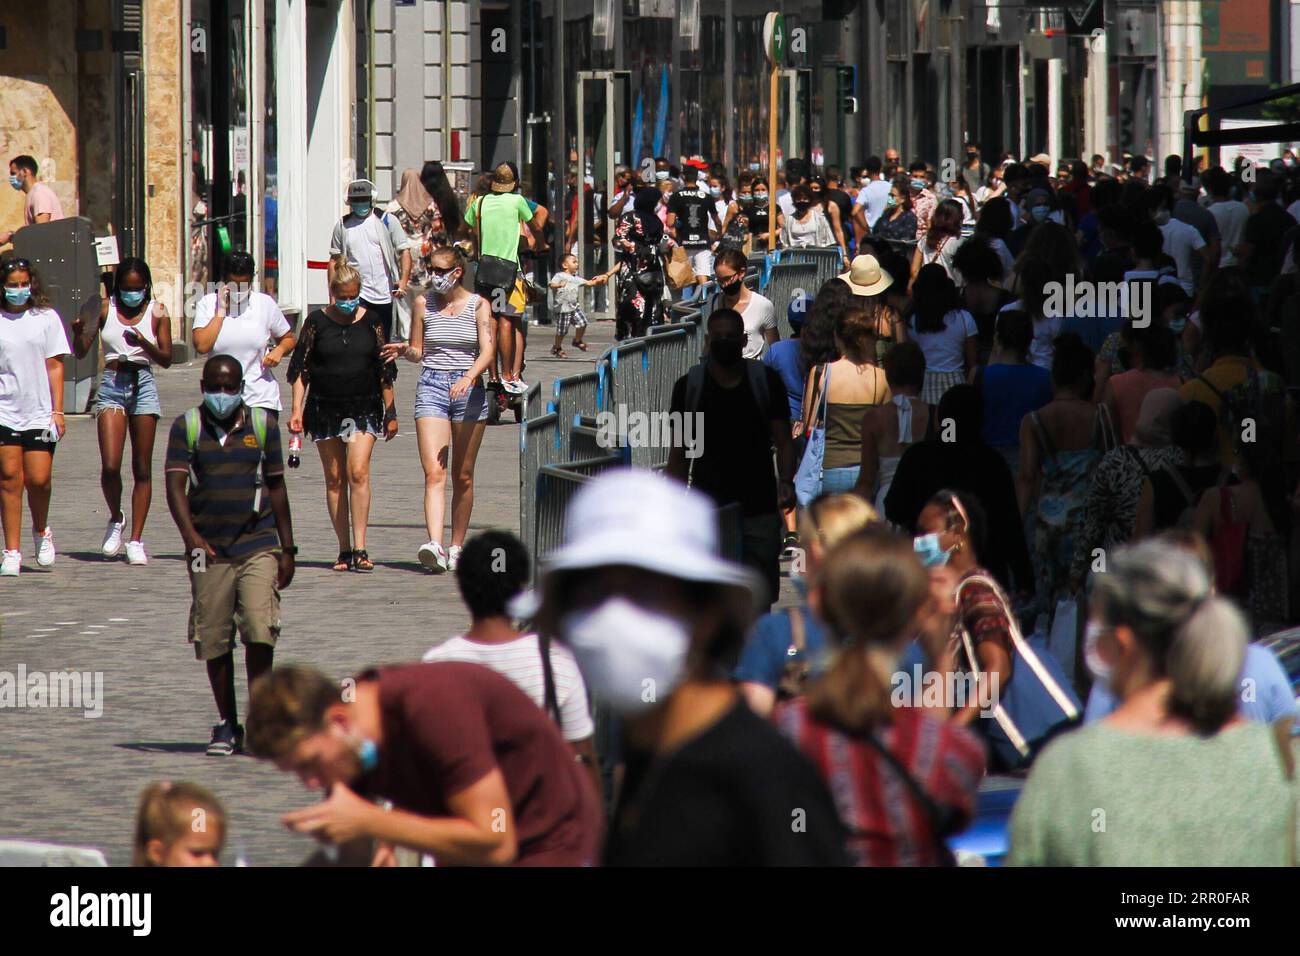 200812 -- BRUXELLES, 12 août 2020 -- des gens marchent dans une rue commerçante de Bruxelles, Belgique, 12 août 2020. Le ministre-président de la région de Bruxelles-capitale Rudi Vervoort a décidé de rendre obligatoire le port du masque dans les lieux publics de toute la région à partir de mercredi. La réglementation est venue alors que le taux d'incidence dans la région a dépassé le seuil de 50 cas pour 100 000 habitants au cours des sept derniers jours. BELGIQUE-BRUXELLES-MASQUE-OBLIGATOIRE ZhengxHuansong PUBLICATIONxNOTxINxCHN Banque D'Images